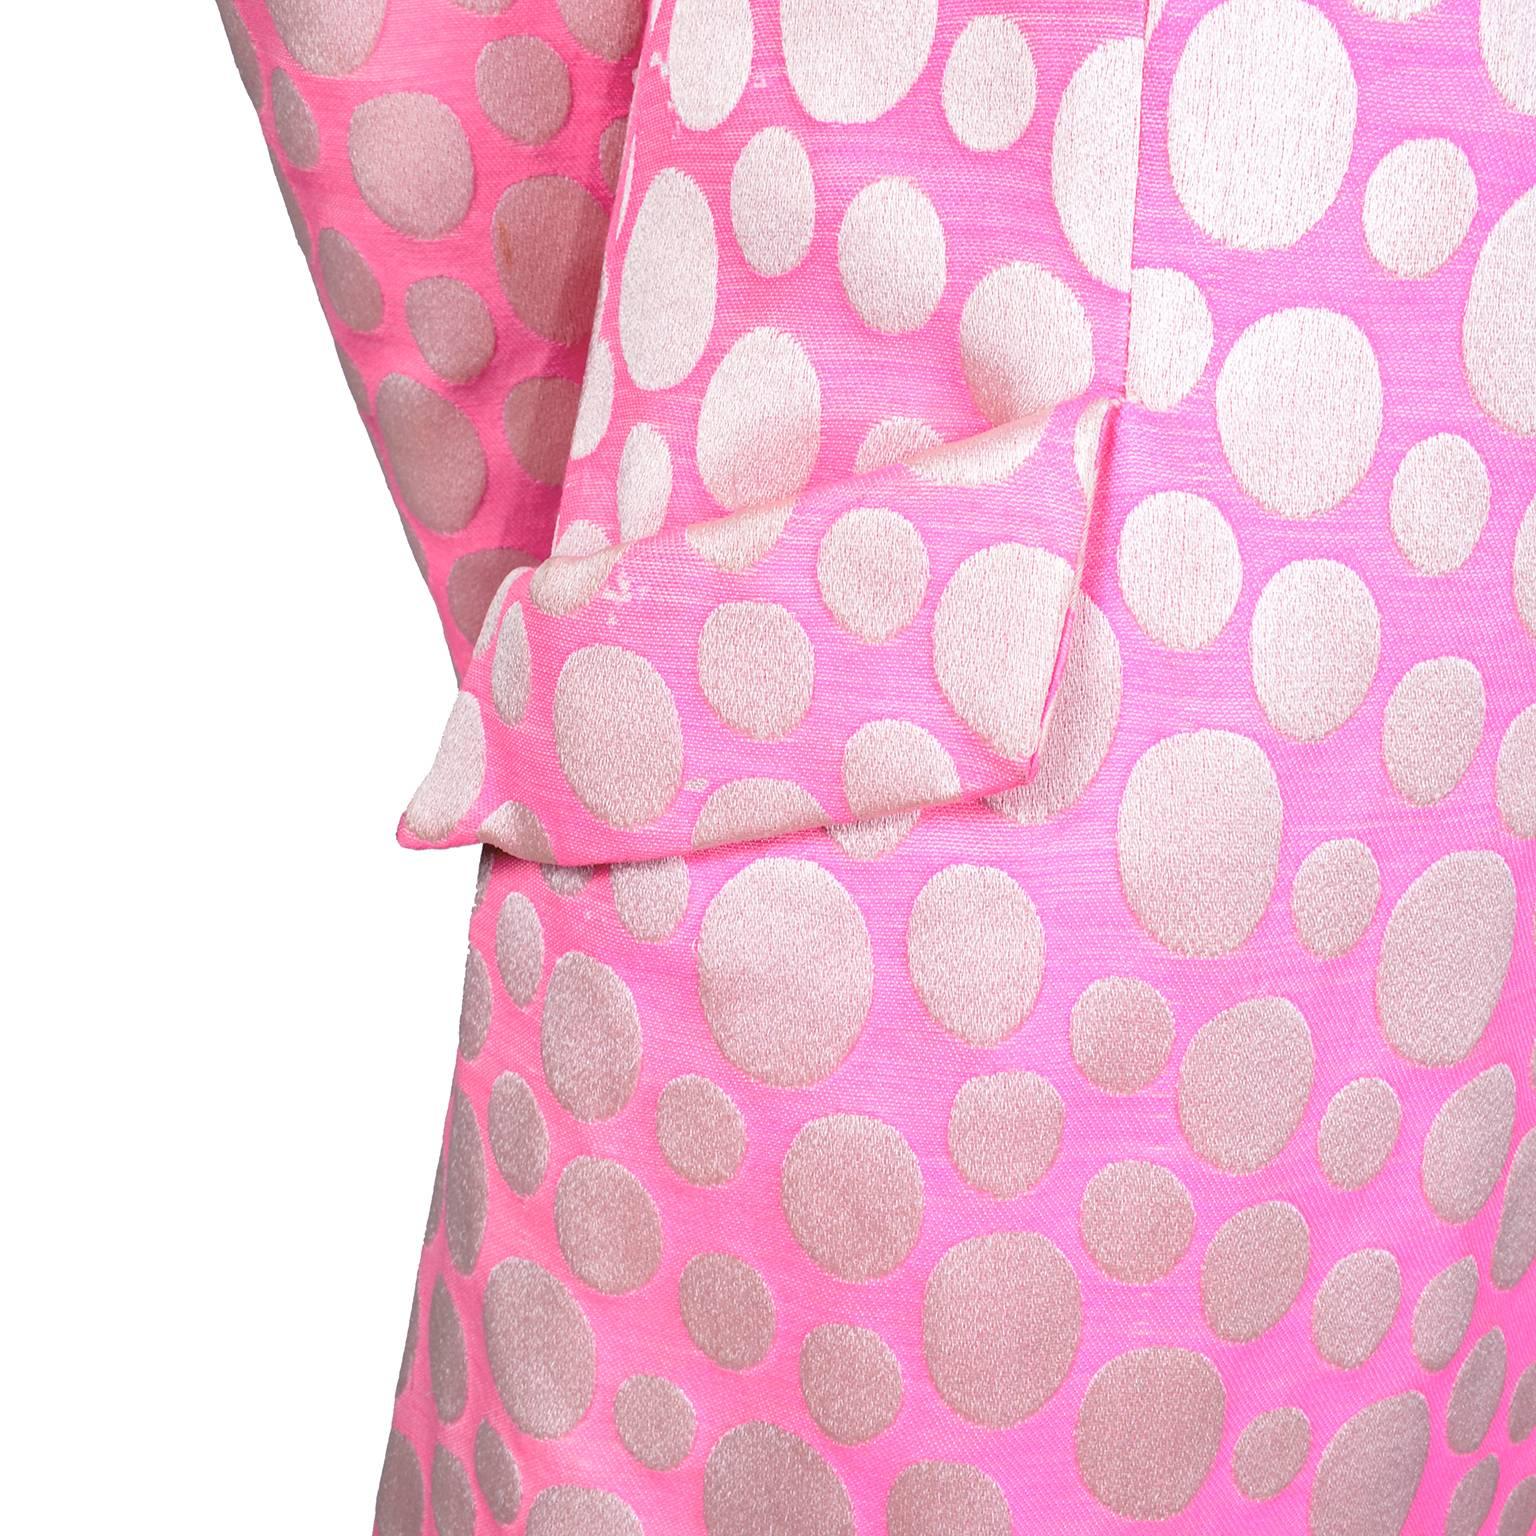 1960s Mod Vintage Pink Polka Dot Sleeveless Dress & Coat Suit Crest Room 3